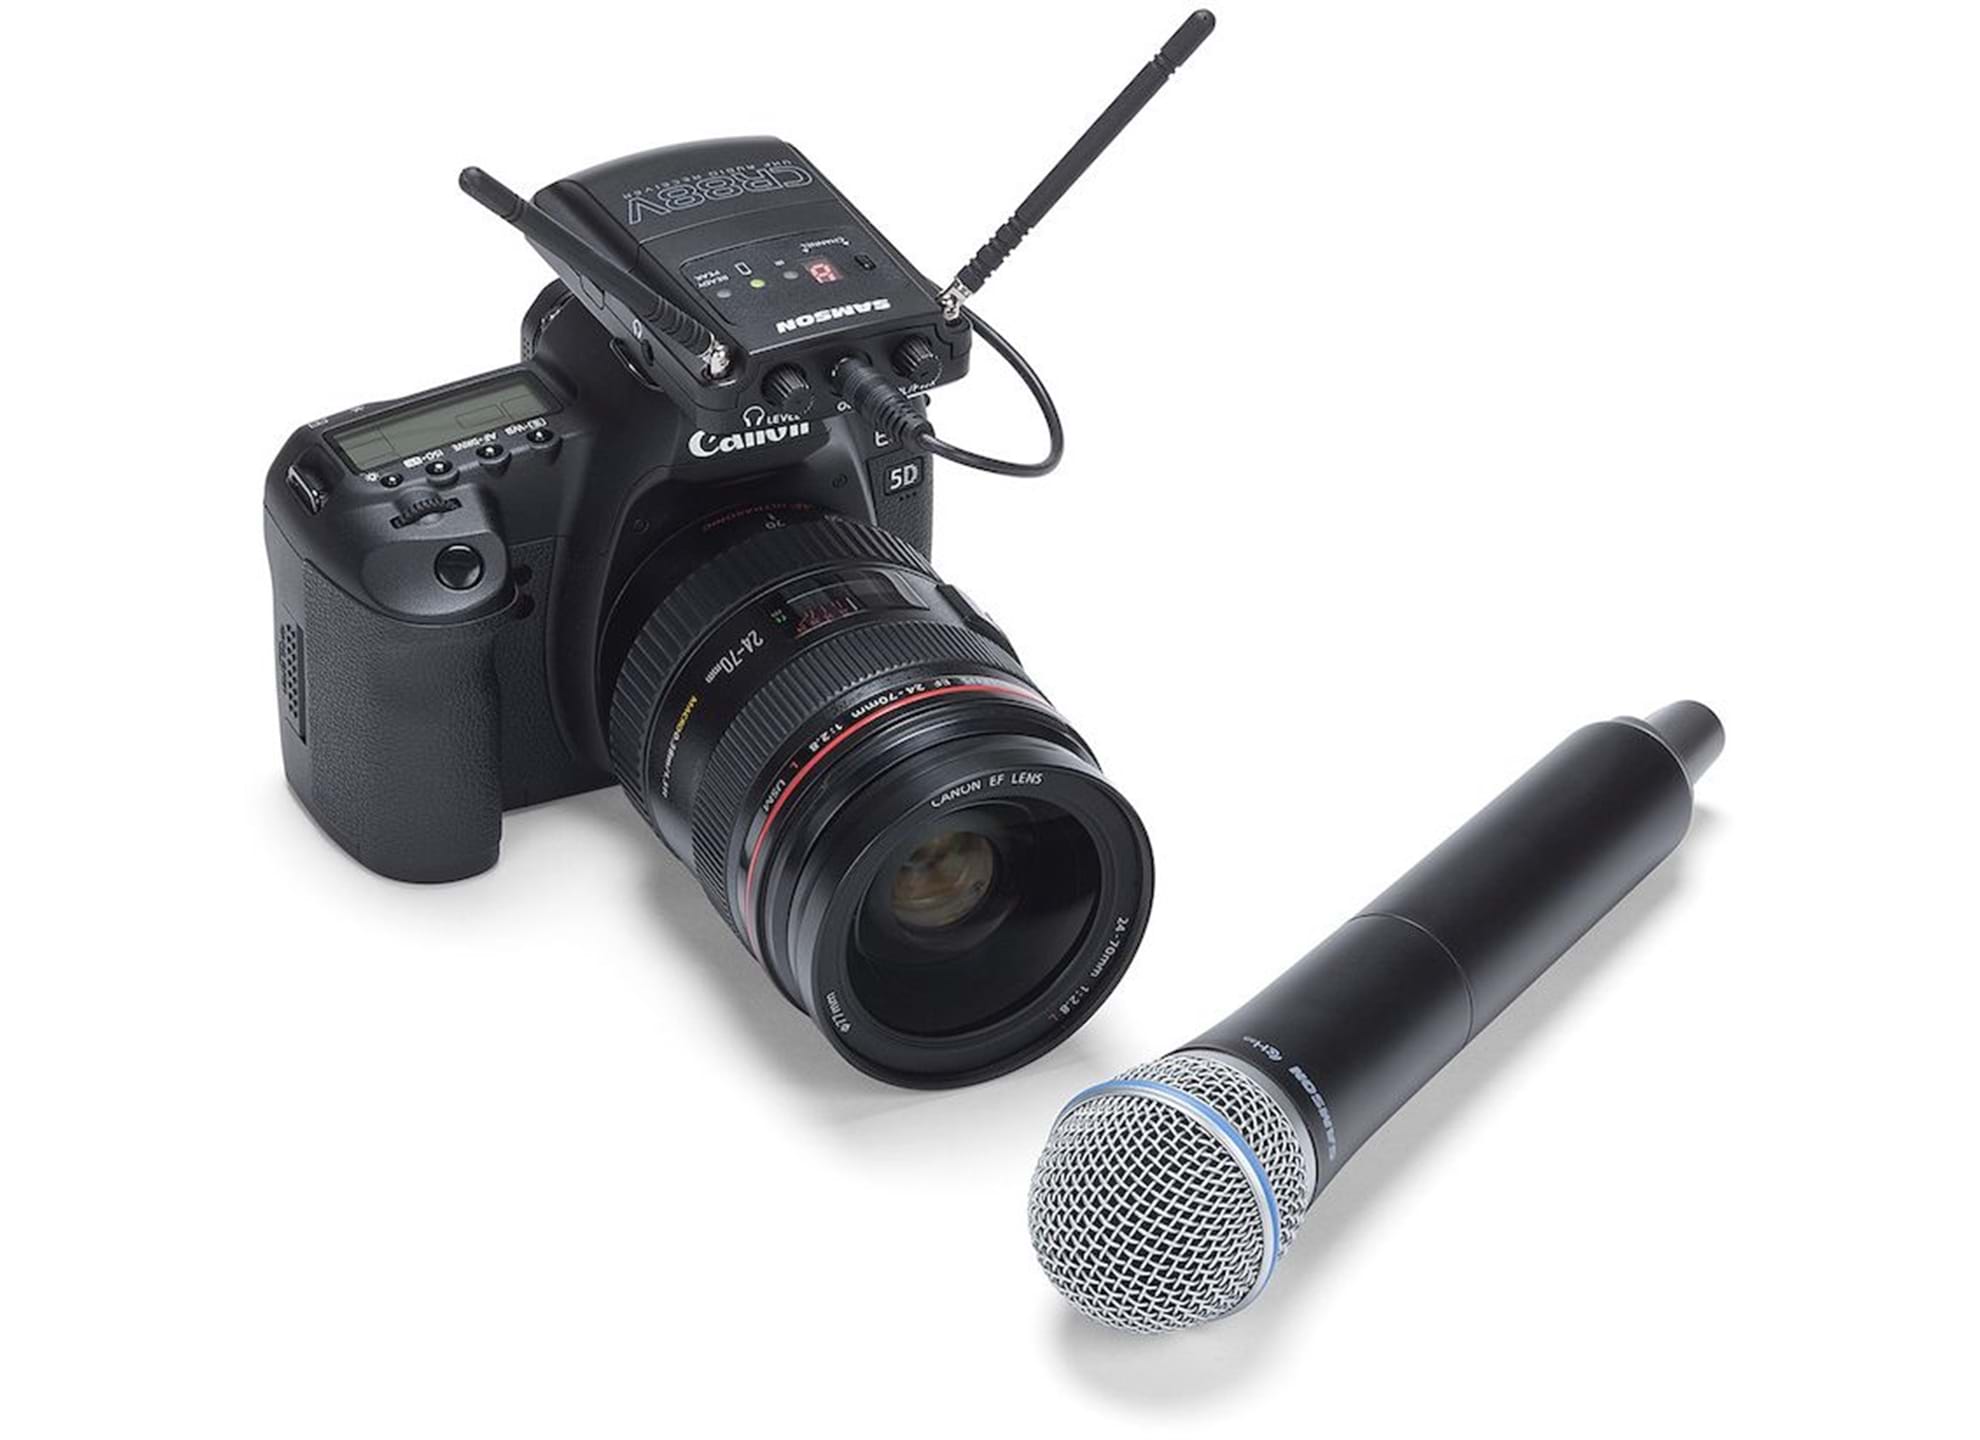 Concert 88 Handheld Camera System